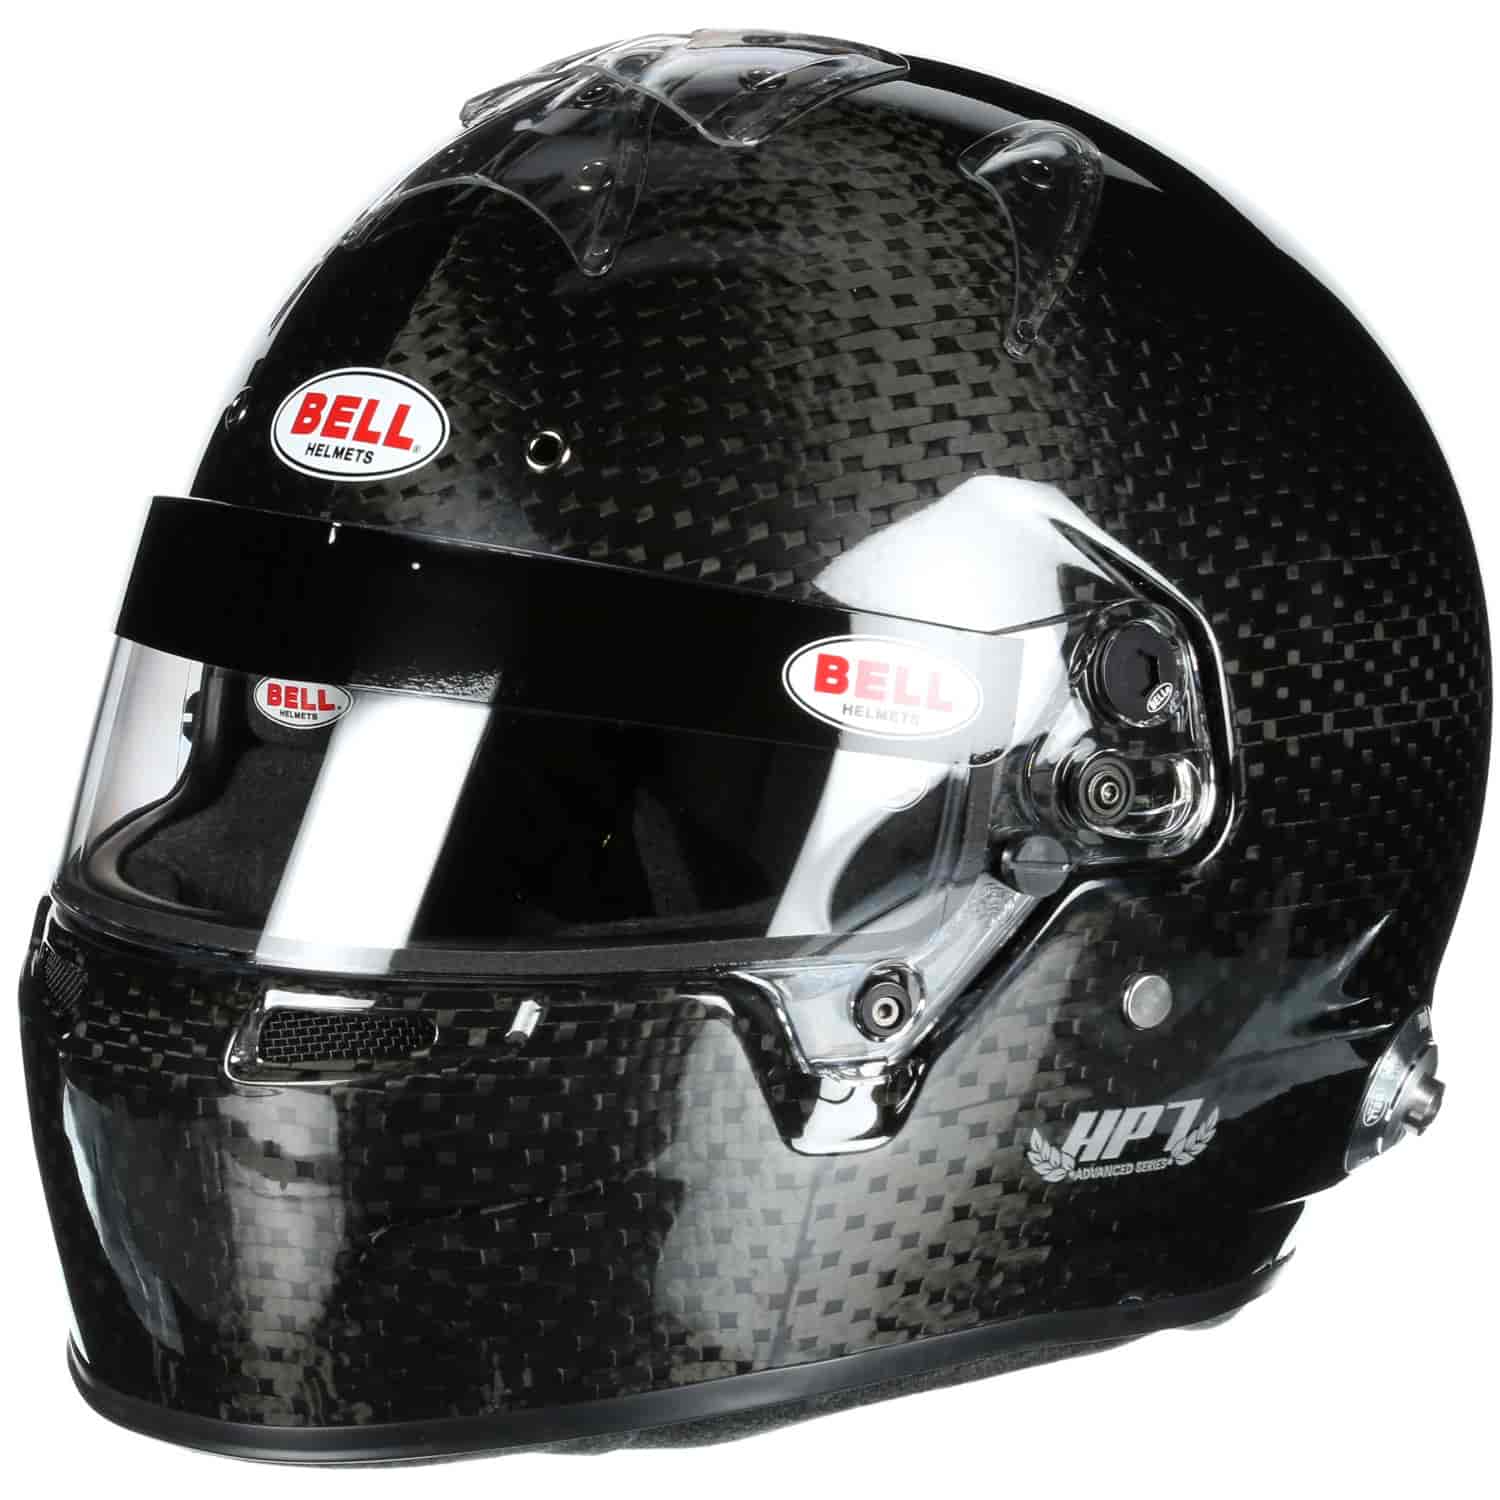 HP7 Carbon Helmet SA2015 Certified